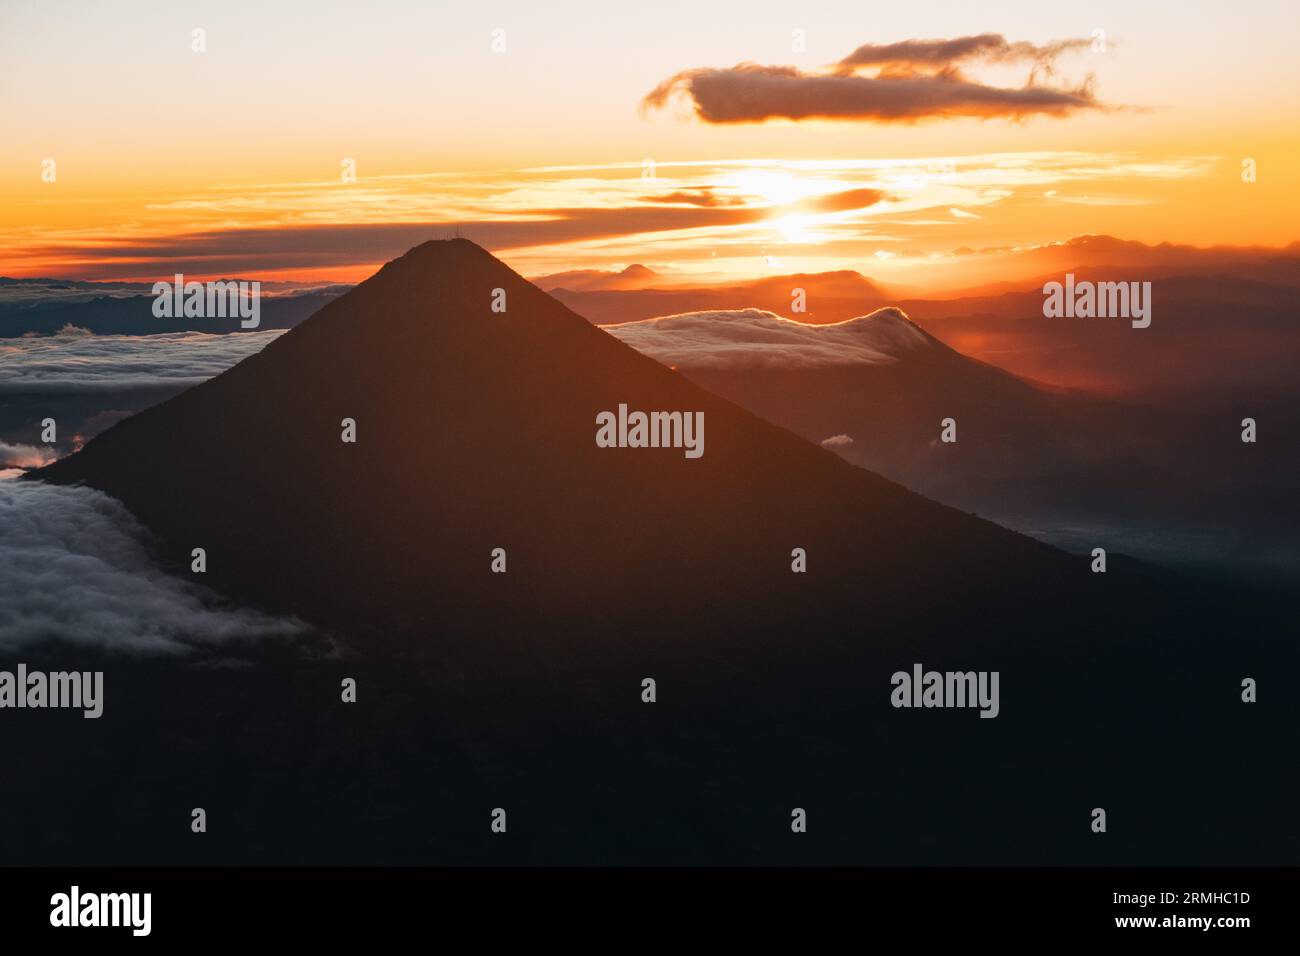 Le soleil se lève derrière le volcan Agua au Guatemala, projetant une silhouette dramatique Banque D'Images